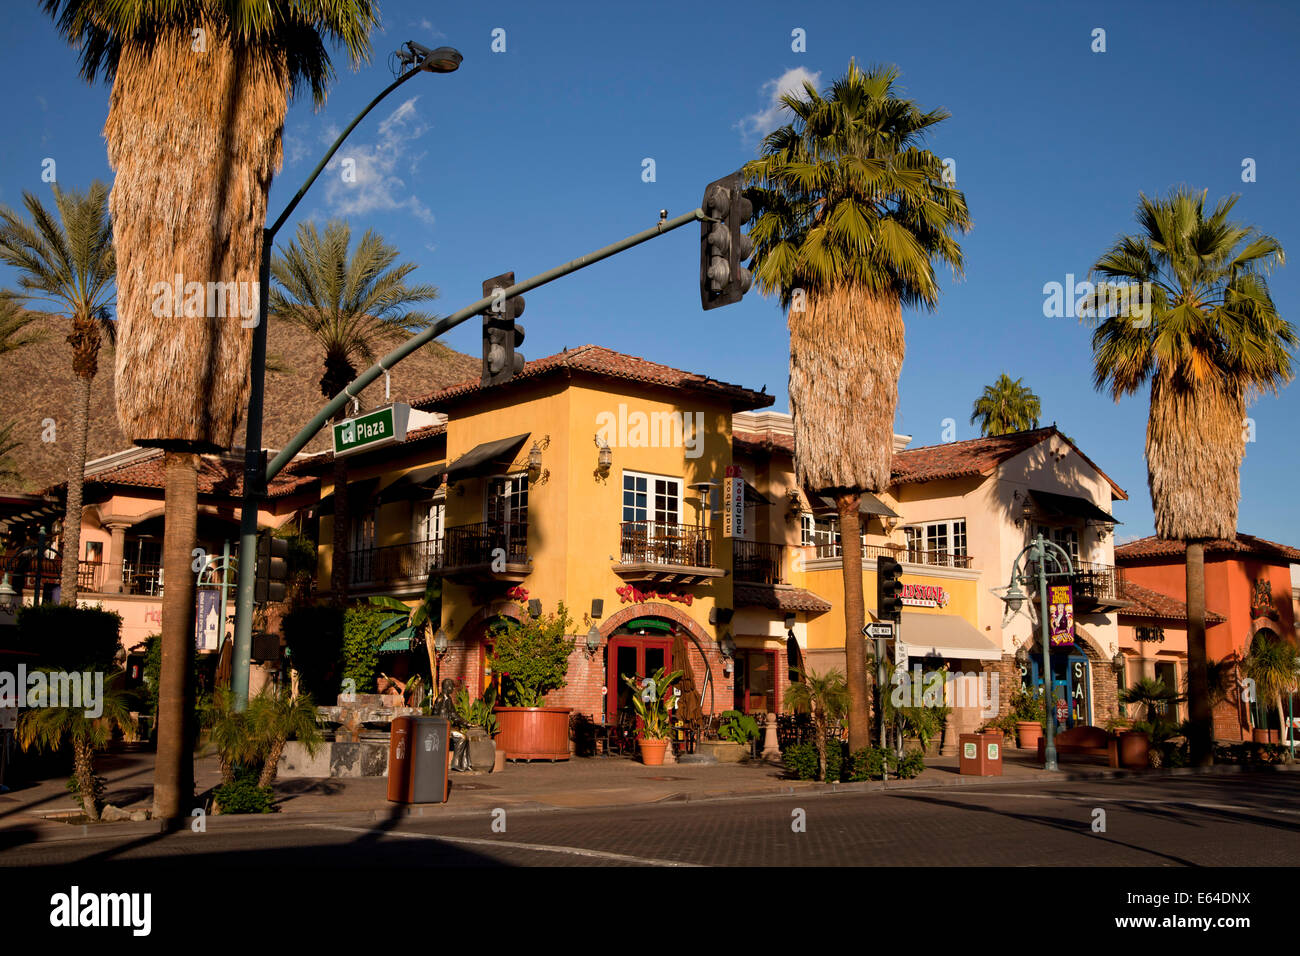 Innenstadt von Palm Springs am Palm Canyon Drive und La Plaza, Palm Springs, Kalifornien, Vereinigte Staaten von Amerika, USA Stockfoto